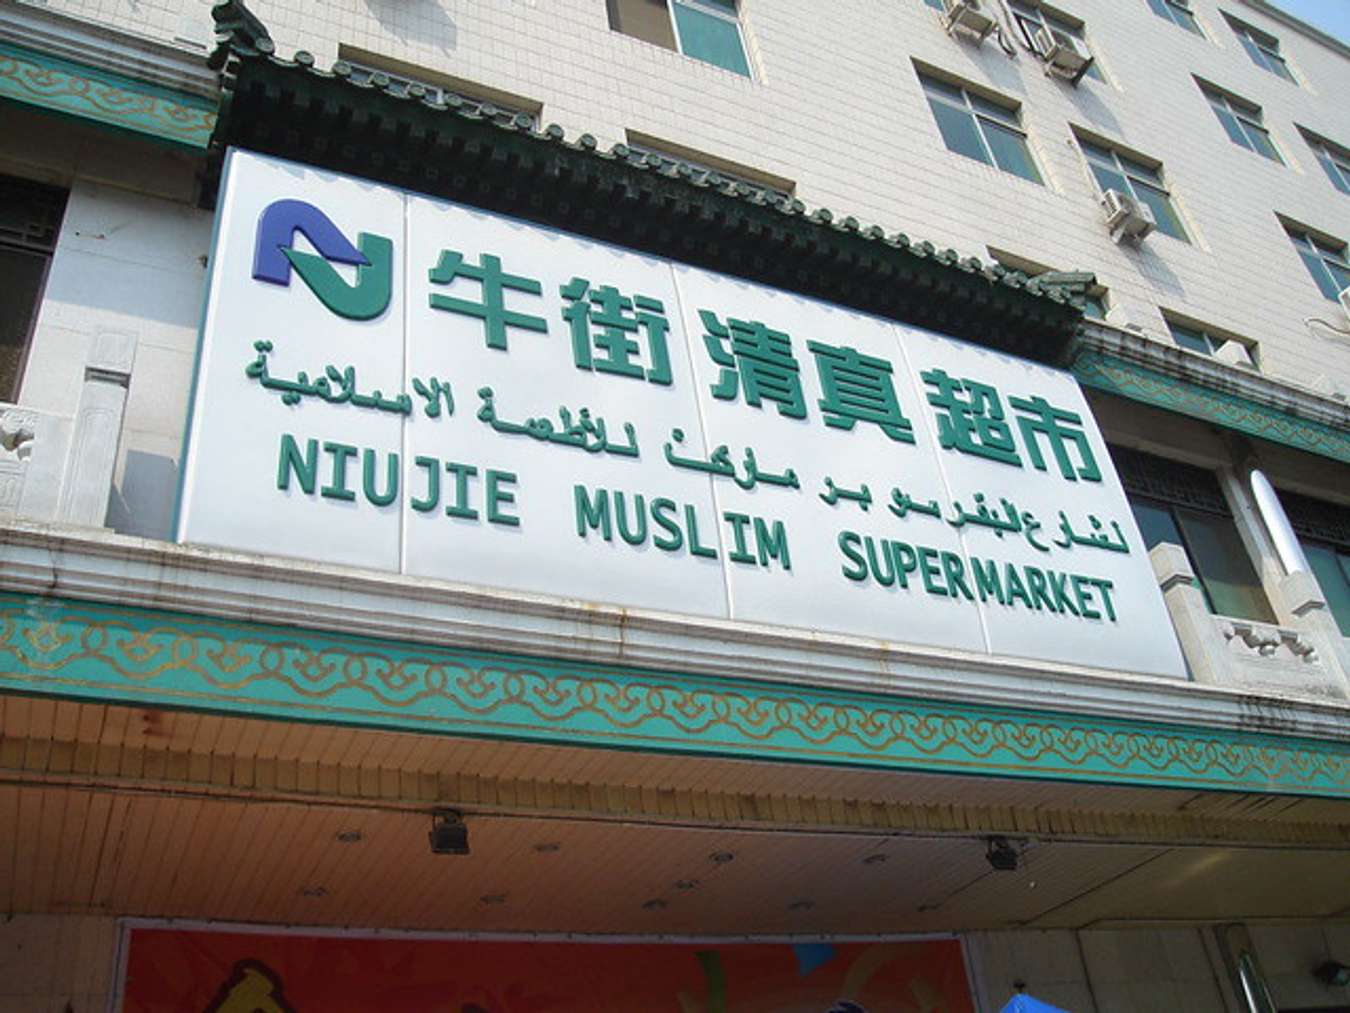 Wisata kuliner street food dari berbagai negara - Niujie Muslim Snack Street